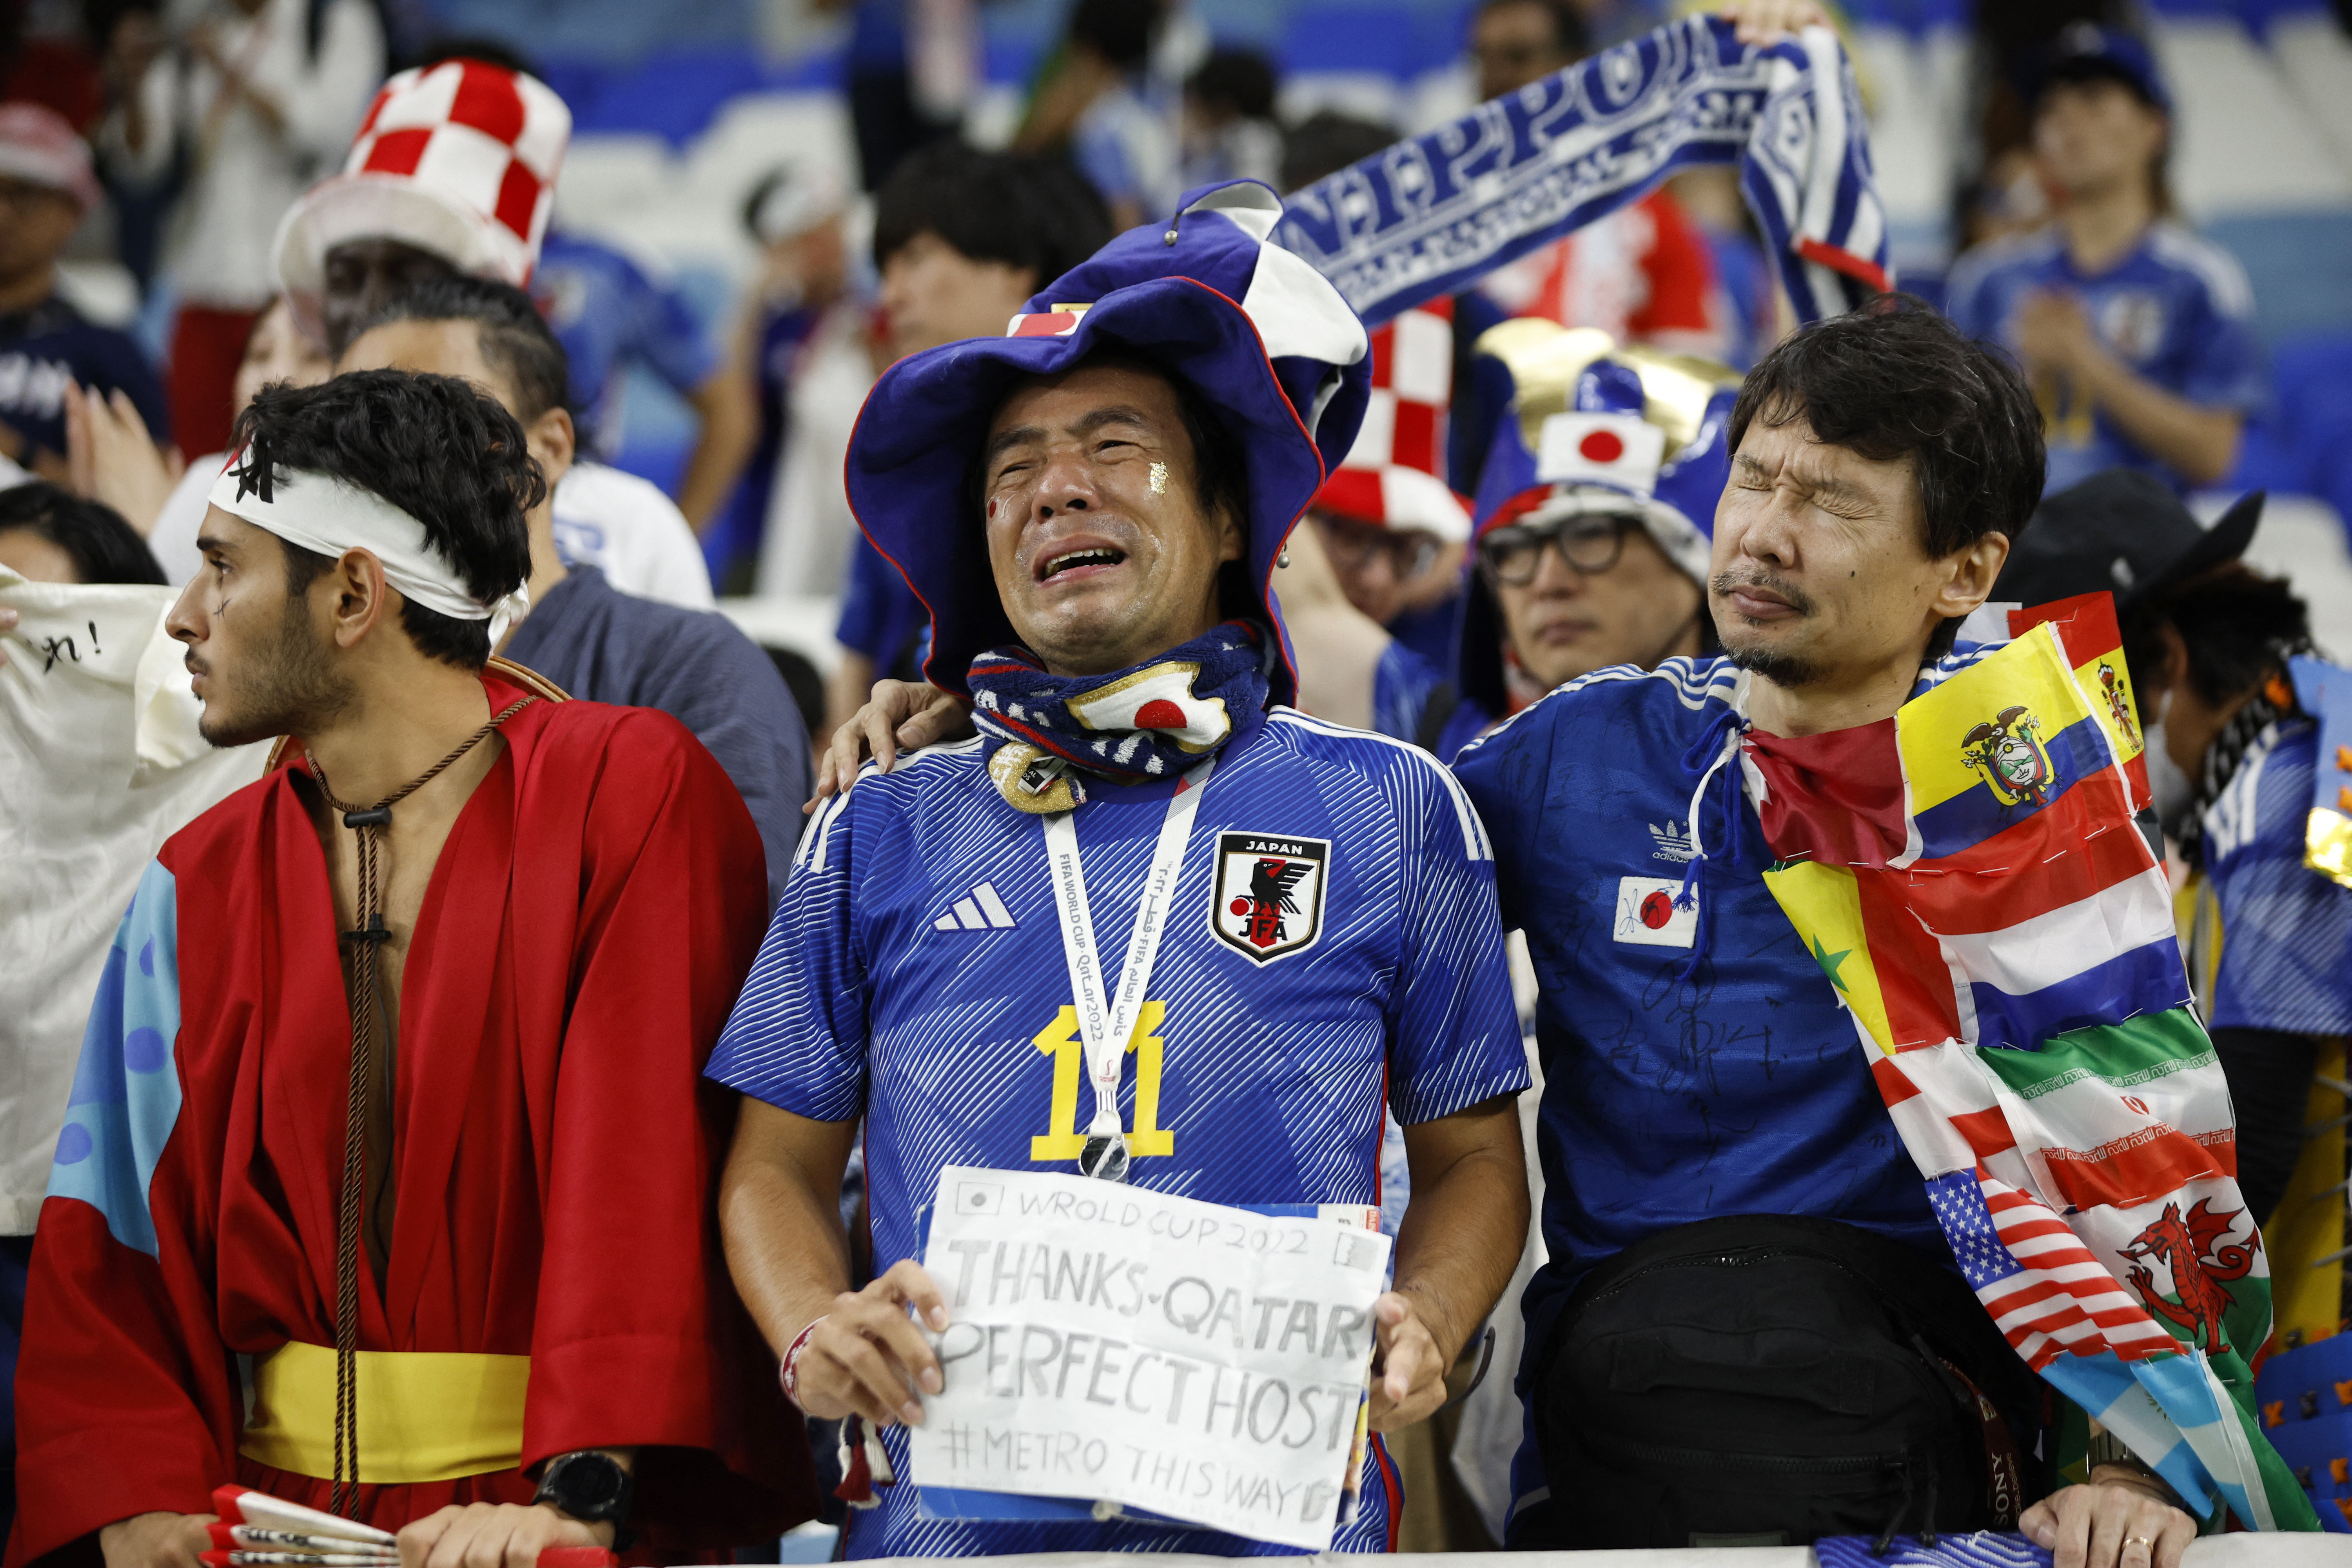 "Gracias Qatar por ser un perfecto anfitrión ", el mensaje de un japonés (REUTERS/John Sibley)